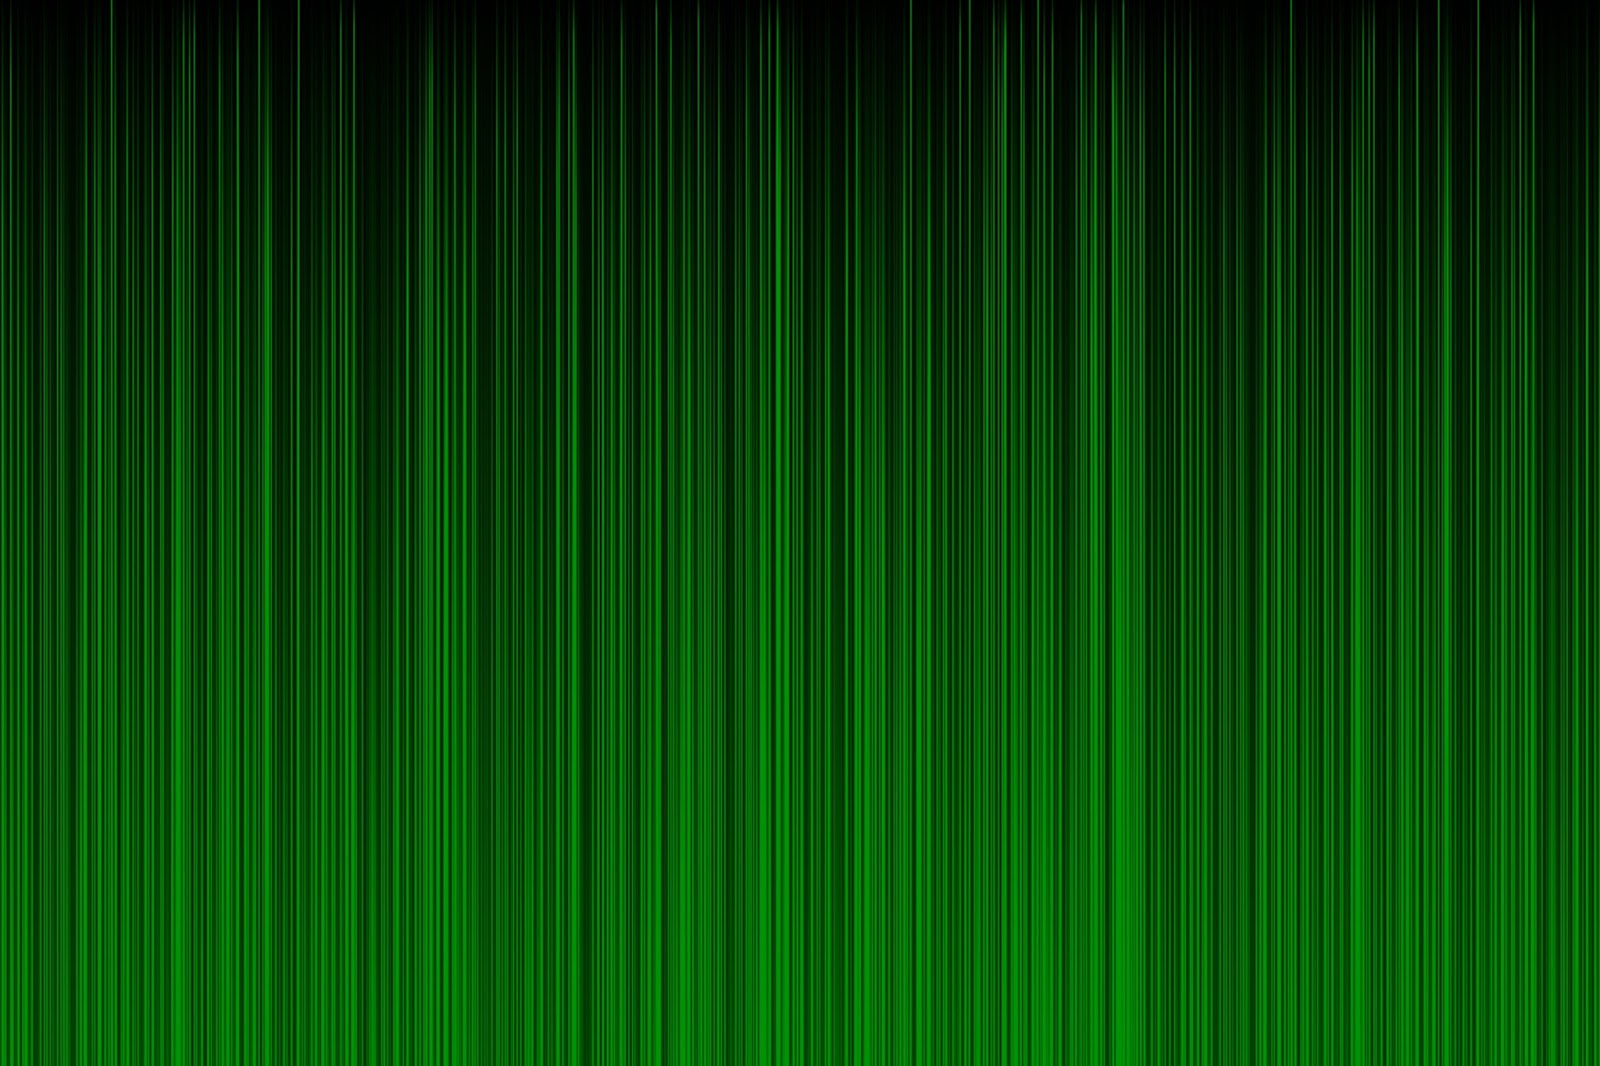 tapete warna hijau,grün,blatt,linie,textil ,muster